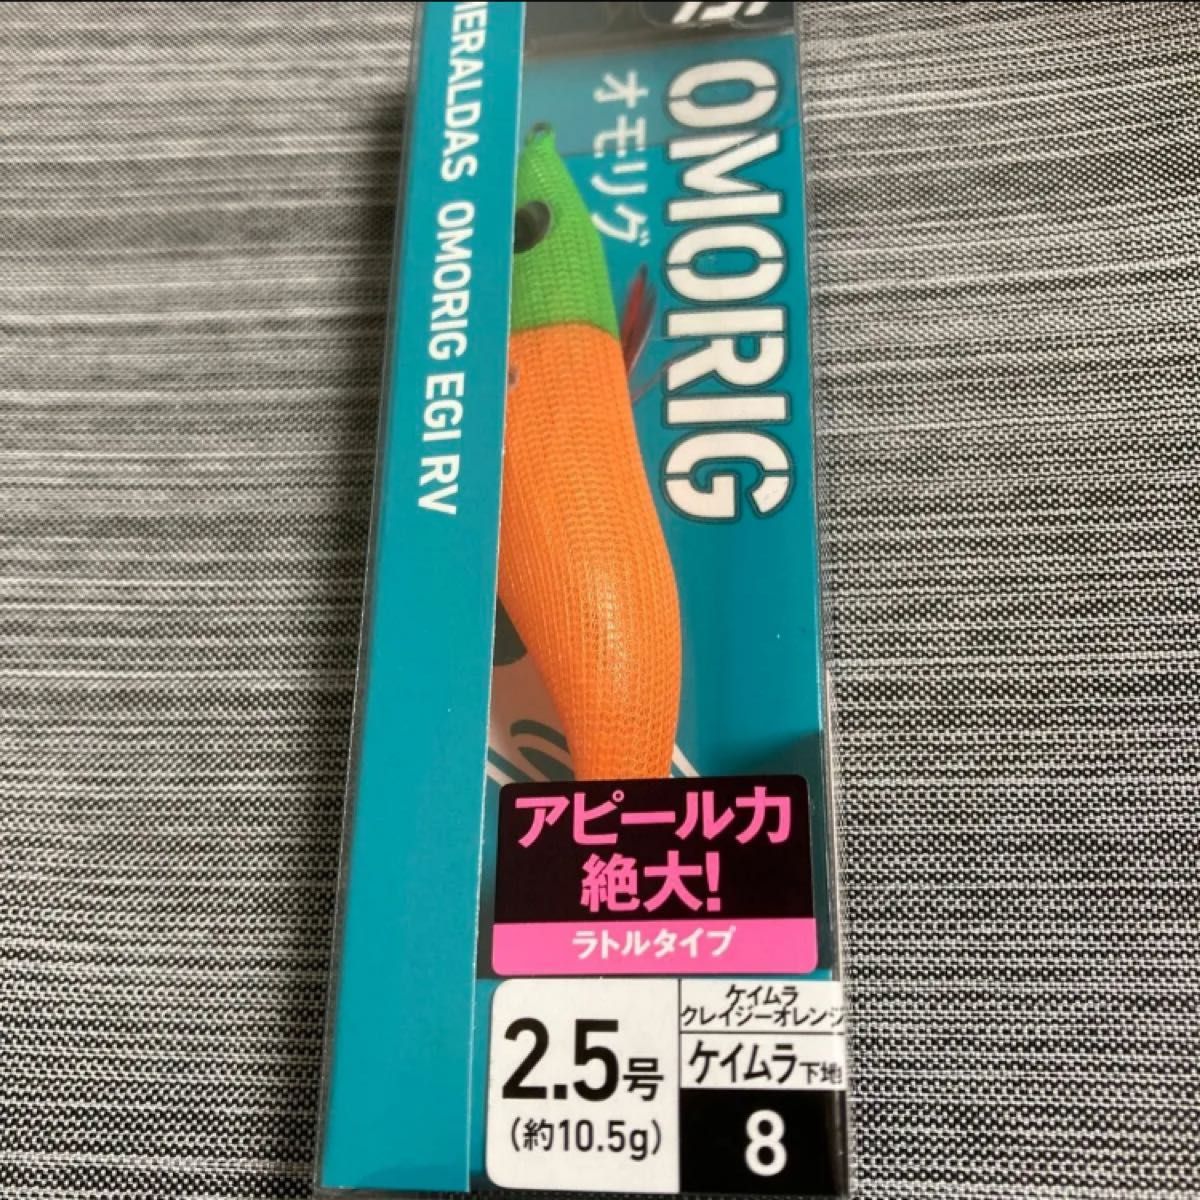 【新品未使用】エメラルダス オモリグエギ RV2.5号 ケイムラ-ケイムラクレイジーオレンジ